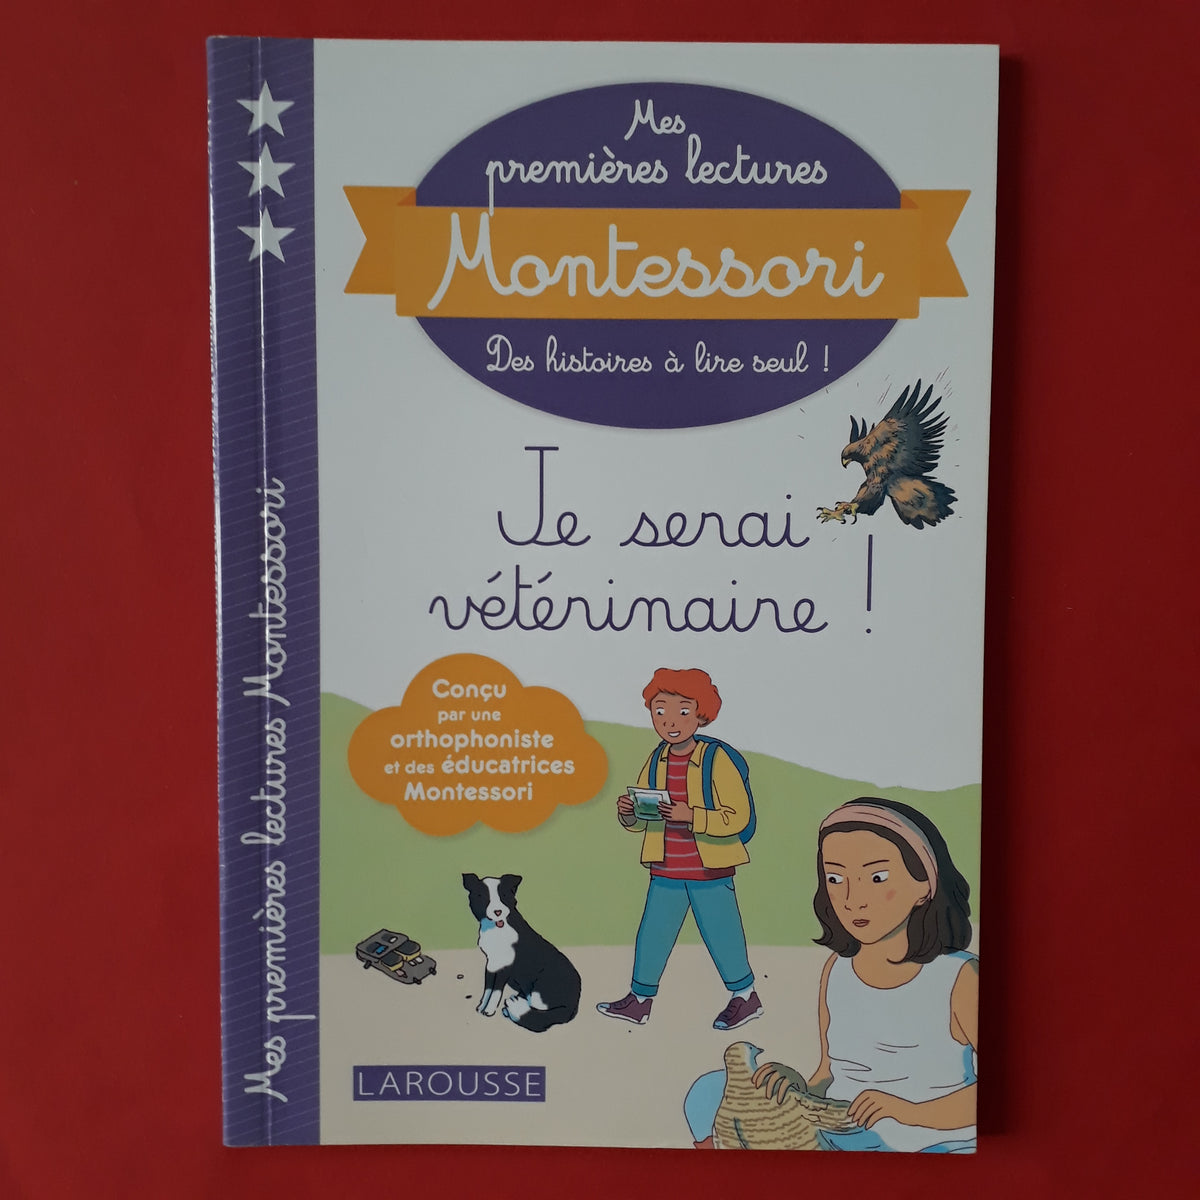 Mon premier livre de lecture Montessori